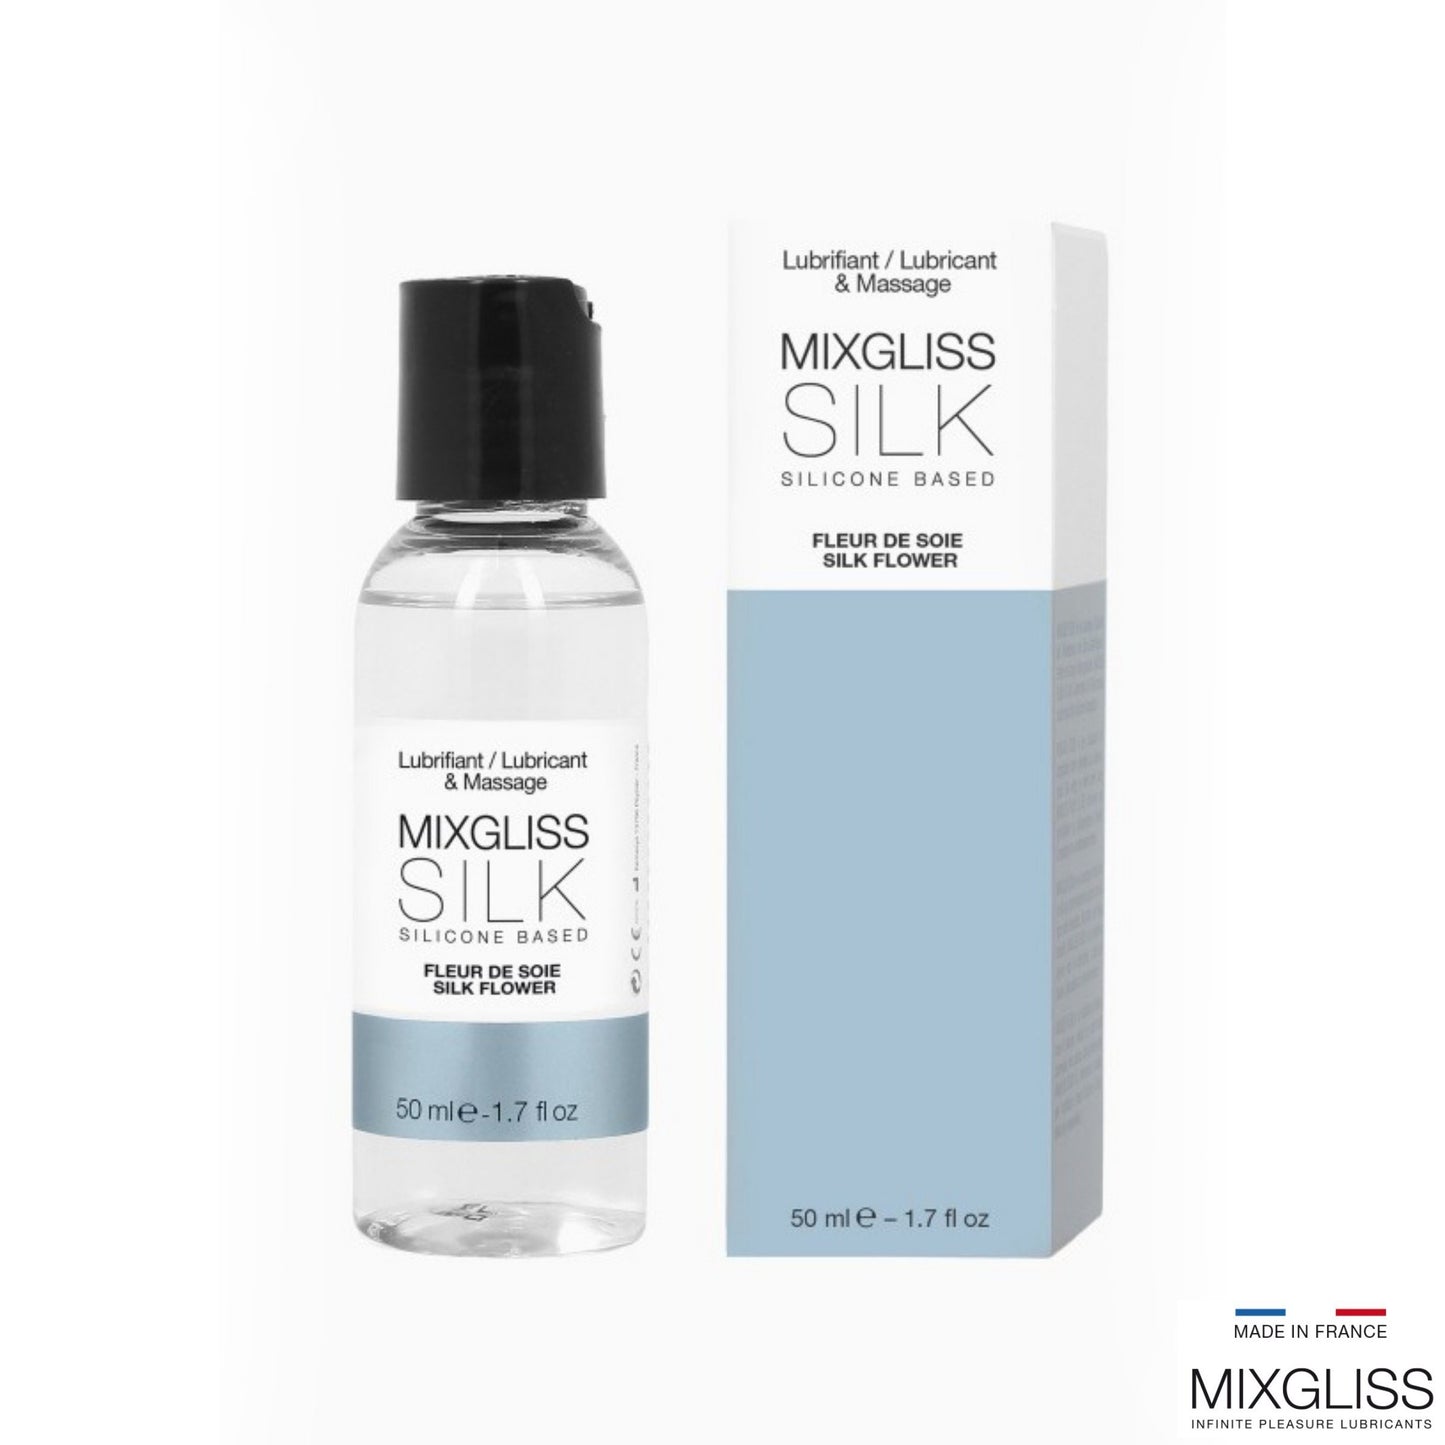 MIXGLISS Silk 淡花香調絲滑 2 合 1 矽性按摩潤滑液 50 毫升 潤滑液 購買